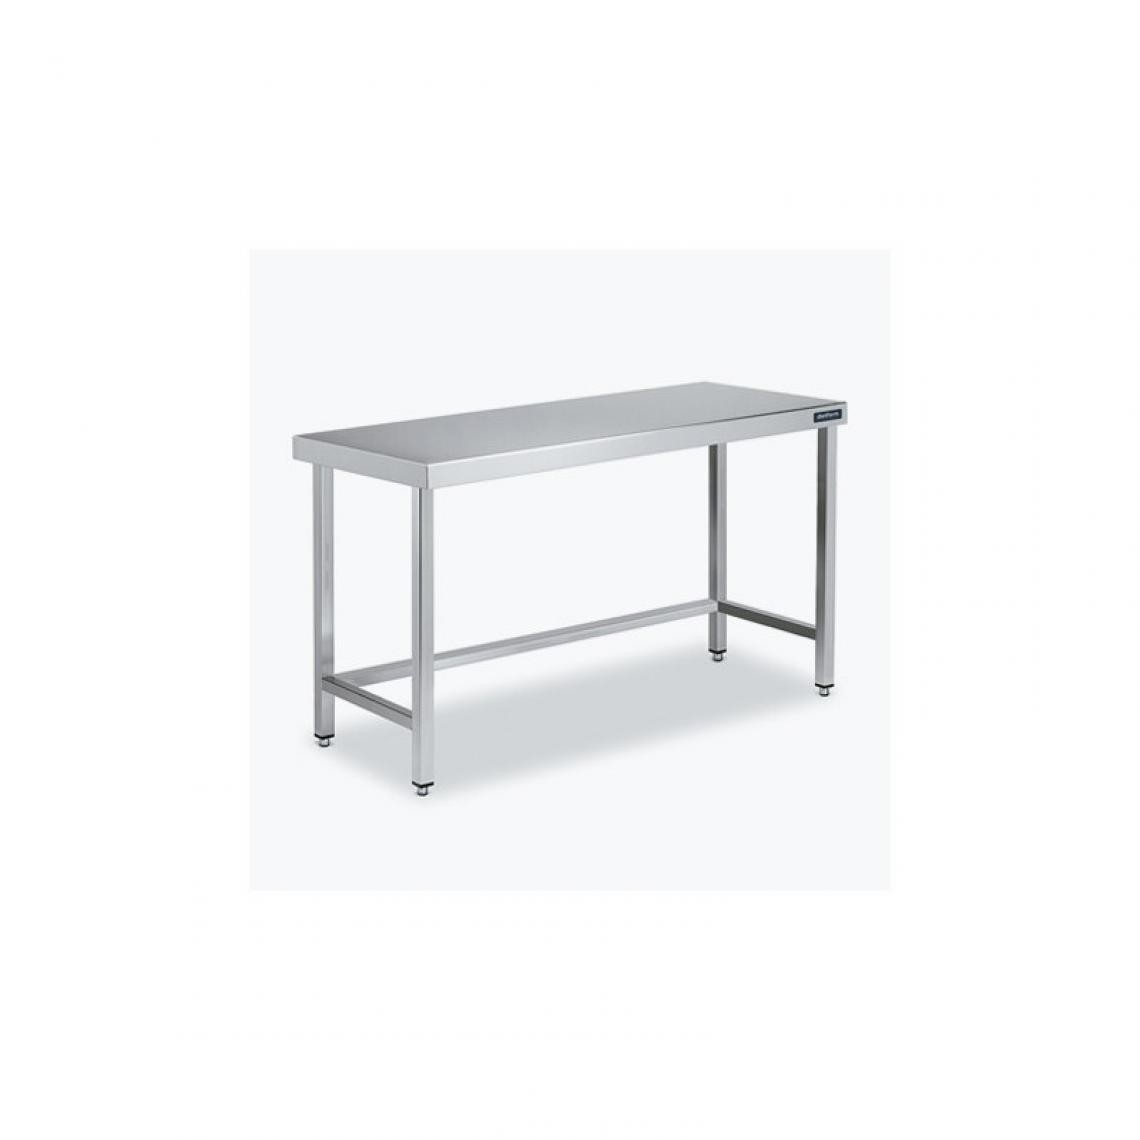 DISTFORM - Table Centrale 600x600 avec Renforts - Distform - Inox 18/101900x600x850mm - Tables à manger